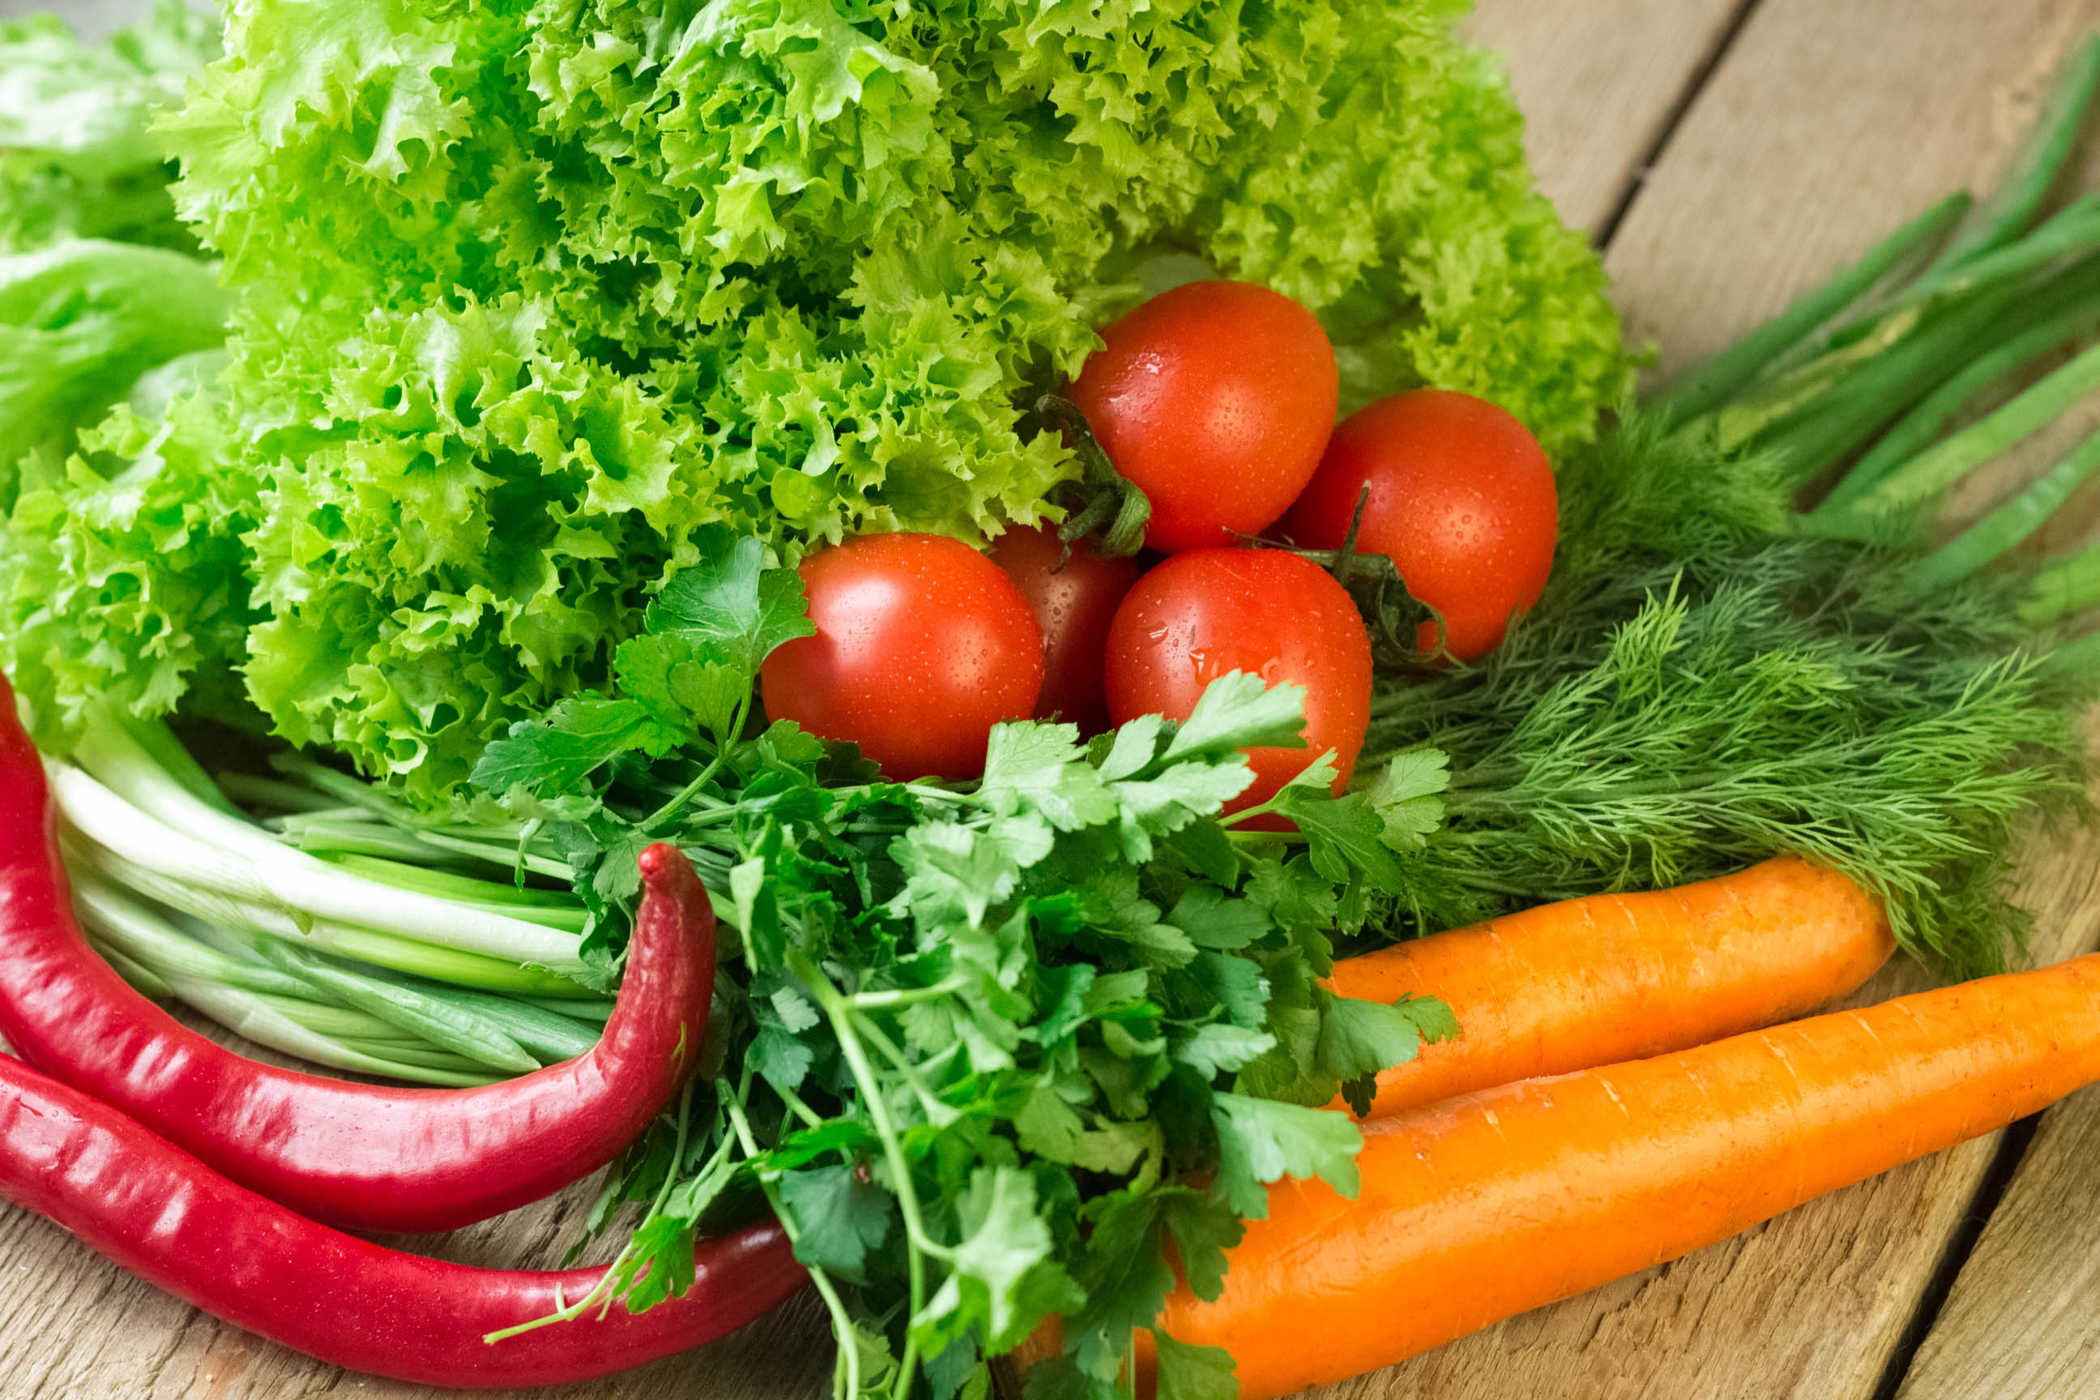   Nên ăn nhiều rau để cung cấp chất dinh dưỡng cũng như giảm chi phí ăn uống  